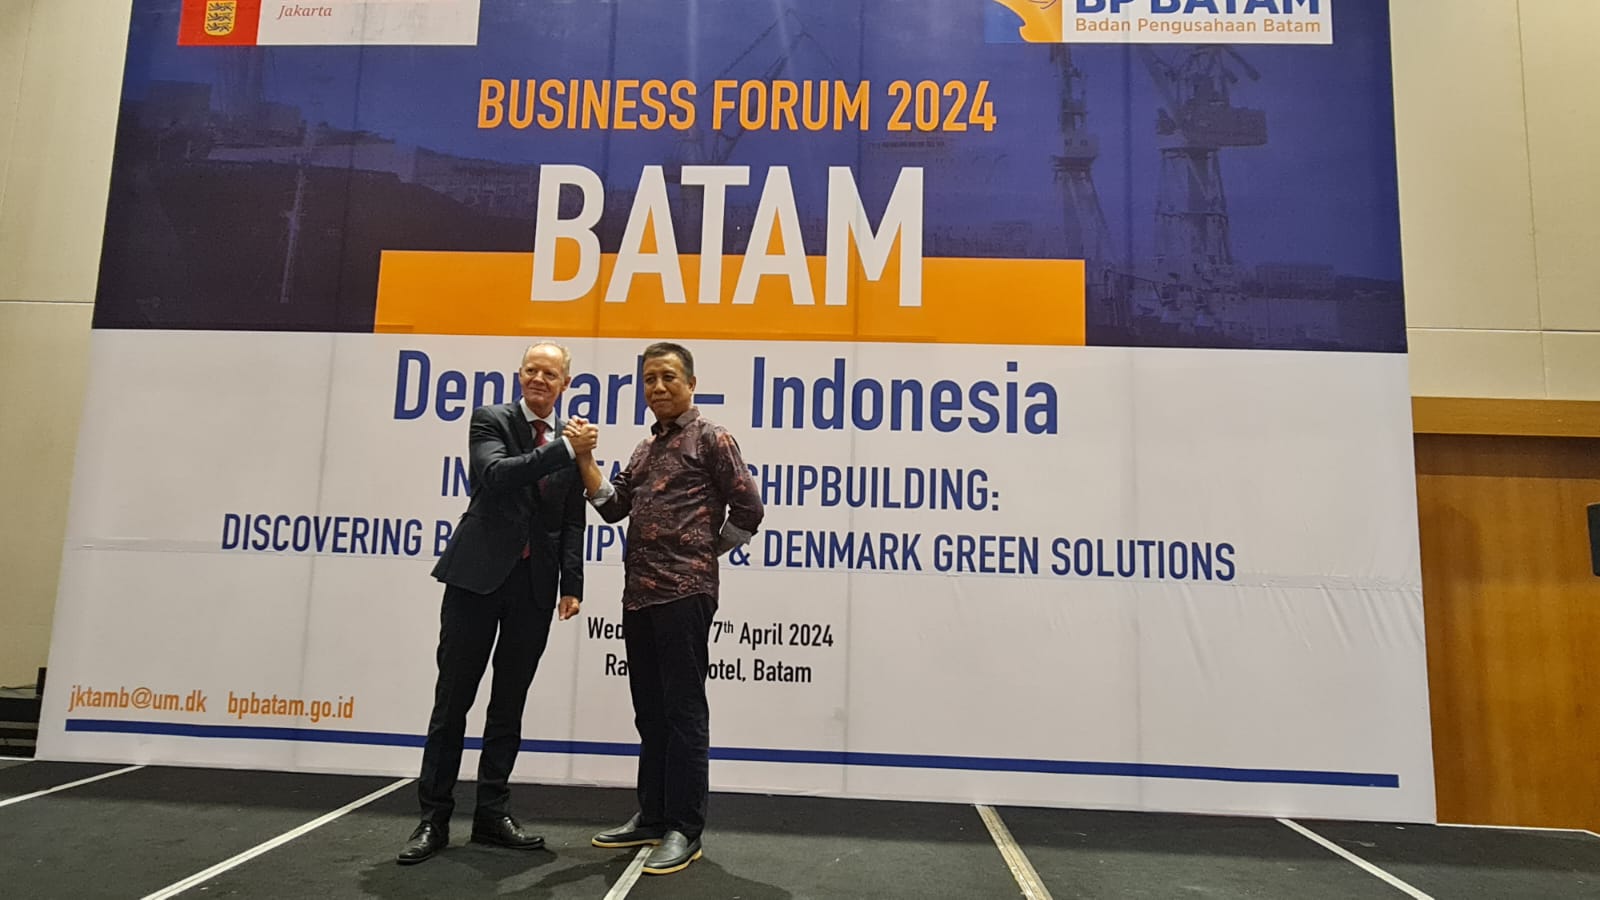 BP Batam Gelar Forum Maritim Indonesia-Denmark, Tingkatkan Kepercayaan Investor di Batam 